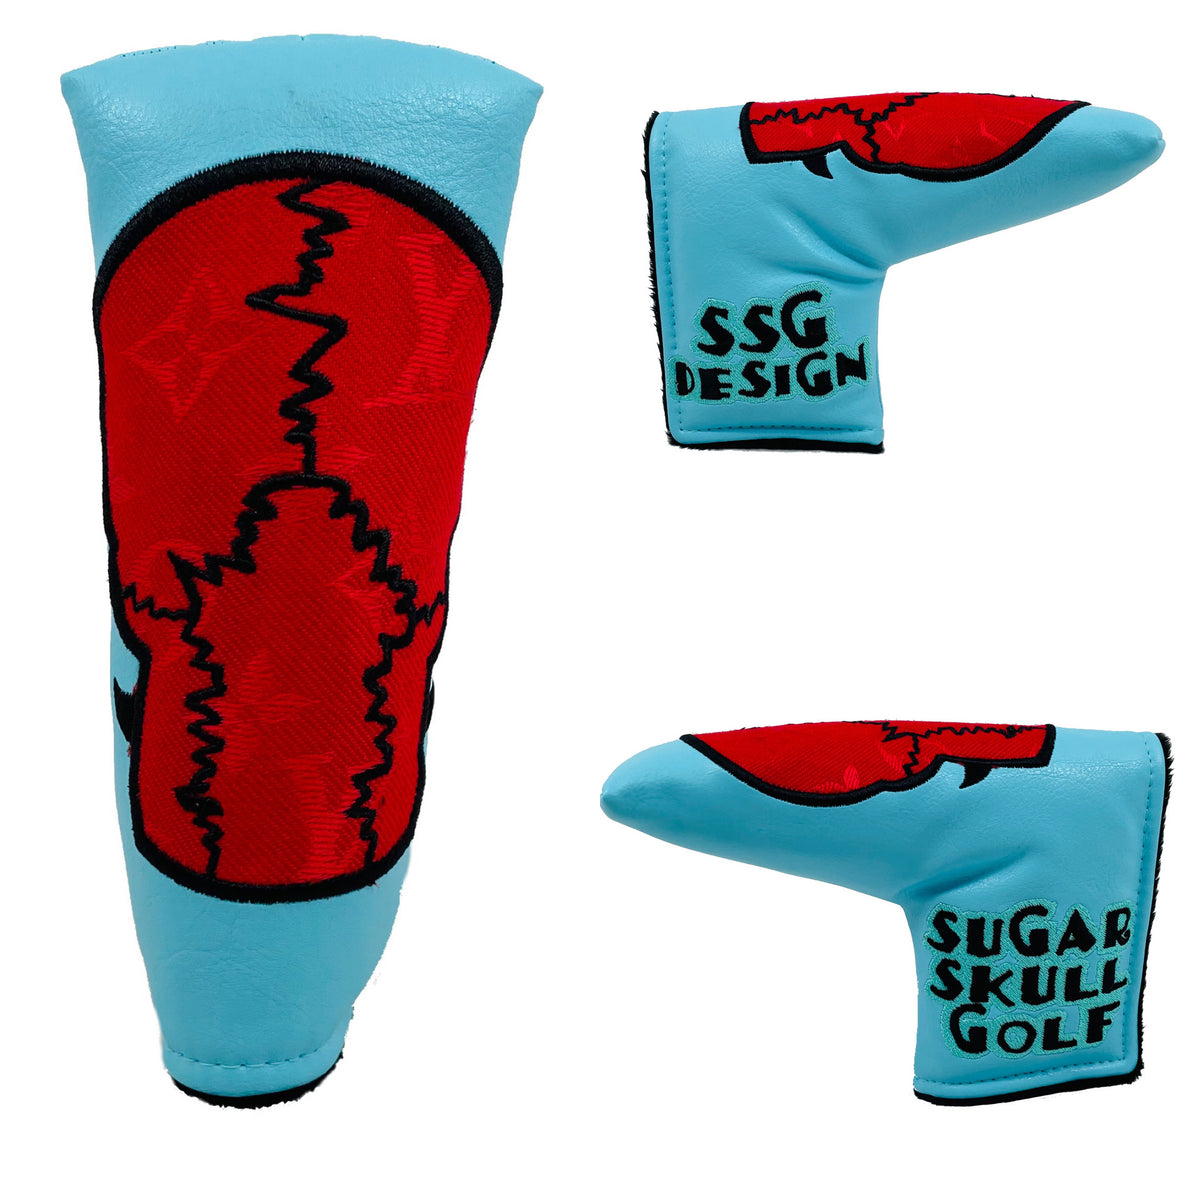 SSG LV Supreme Surfboard Putter Cover - Blade – Sugar Skull Golf